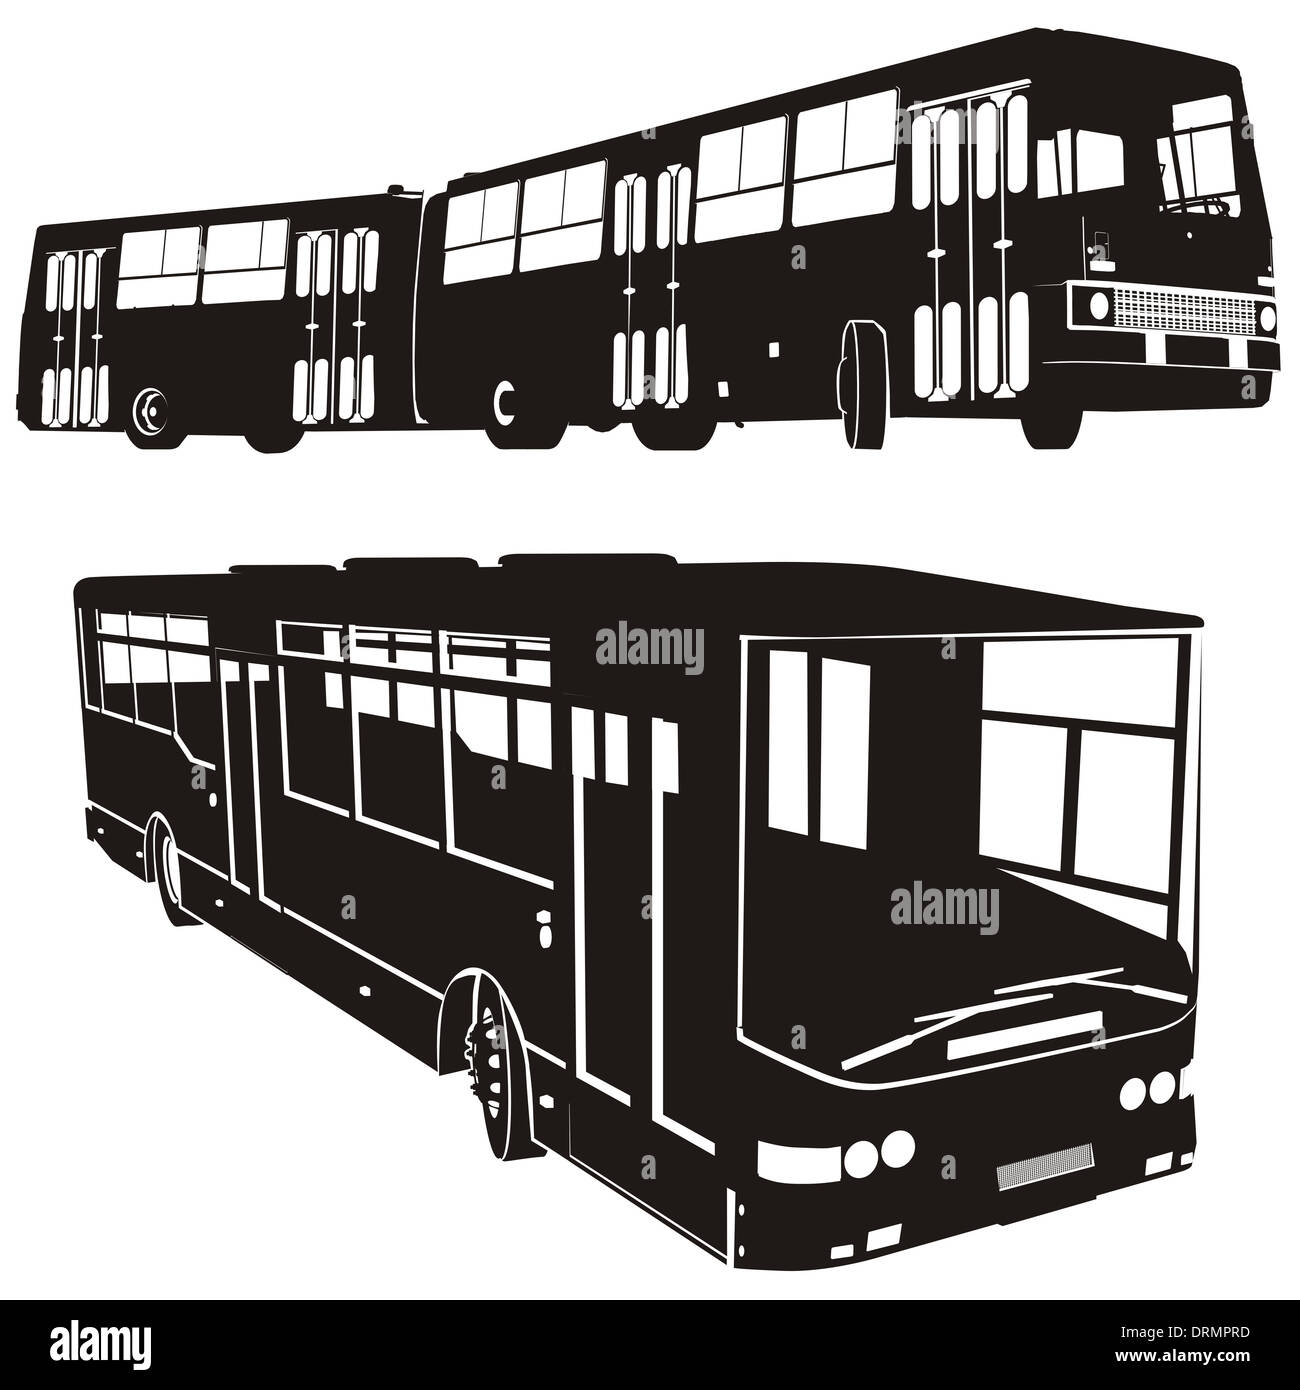 Jeu de silhouettes d'autobus urbains Banque D'Images